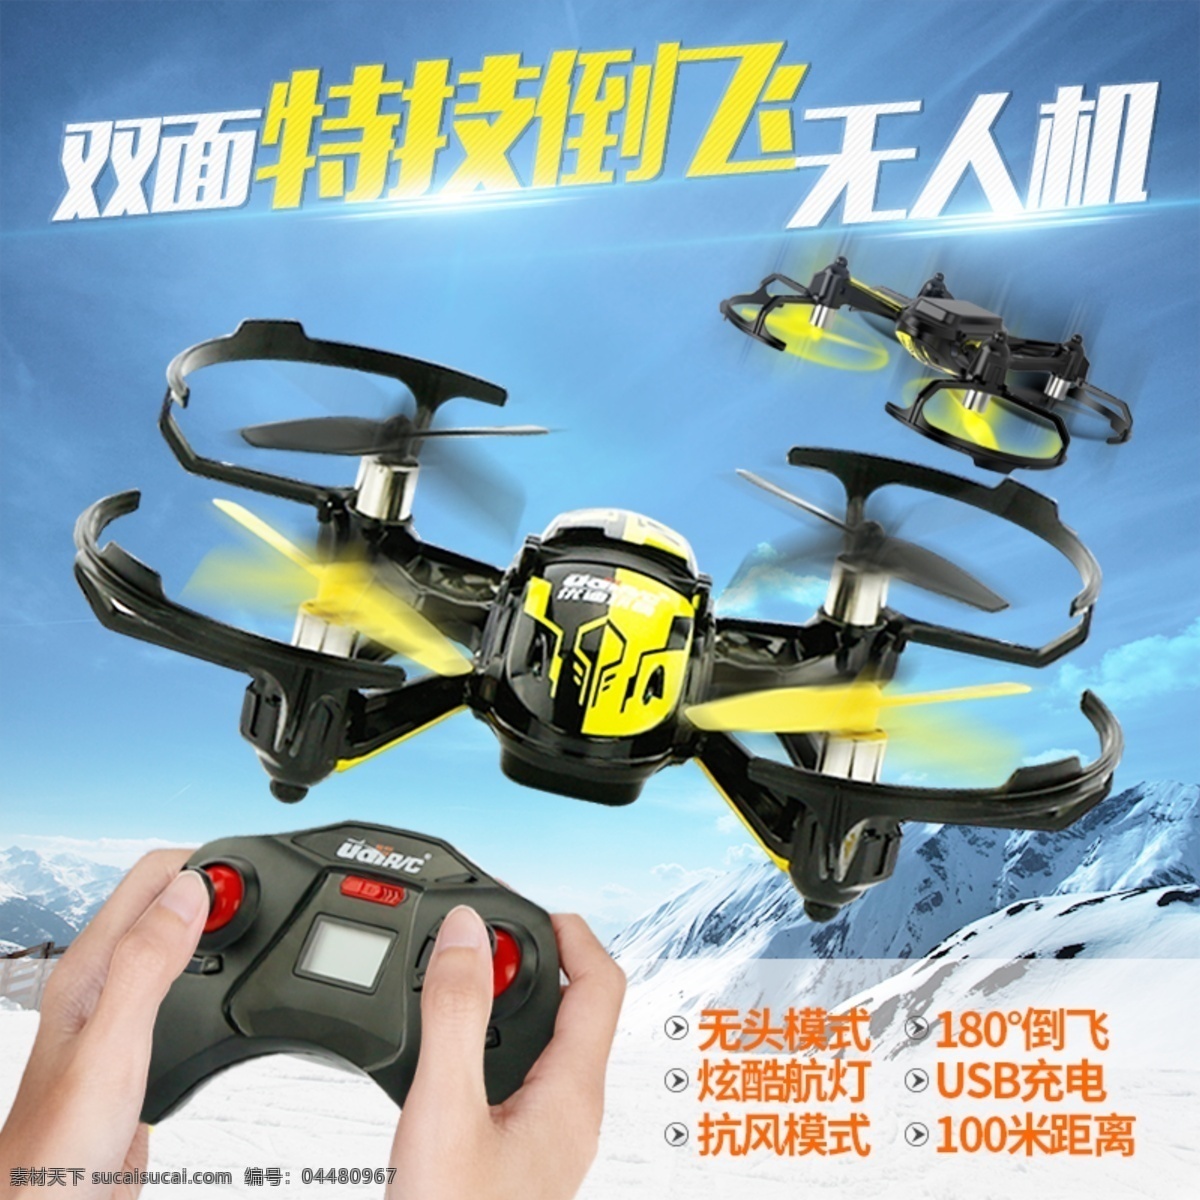 遥控 飞机 玩具 主 图 无人机 天空 蓝天 雪山 倒飞